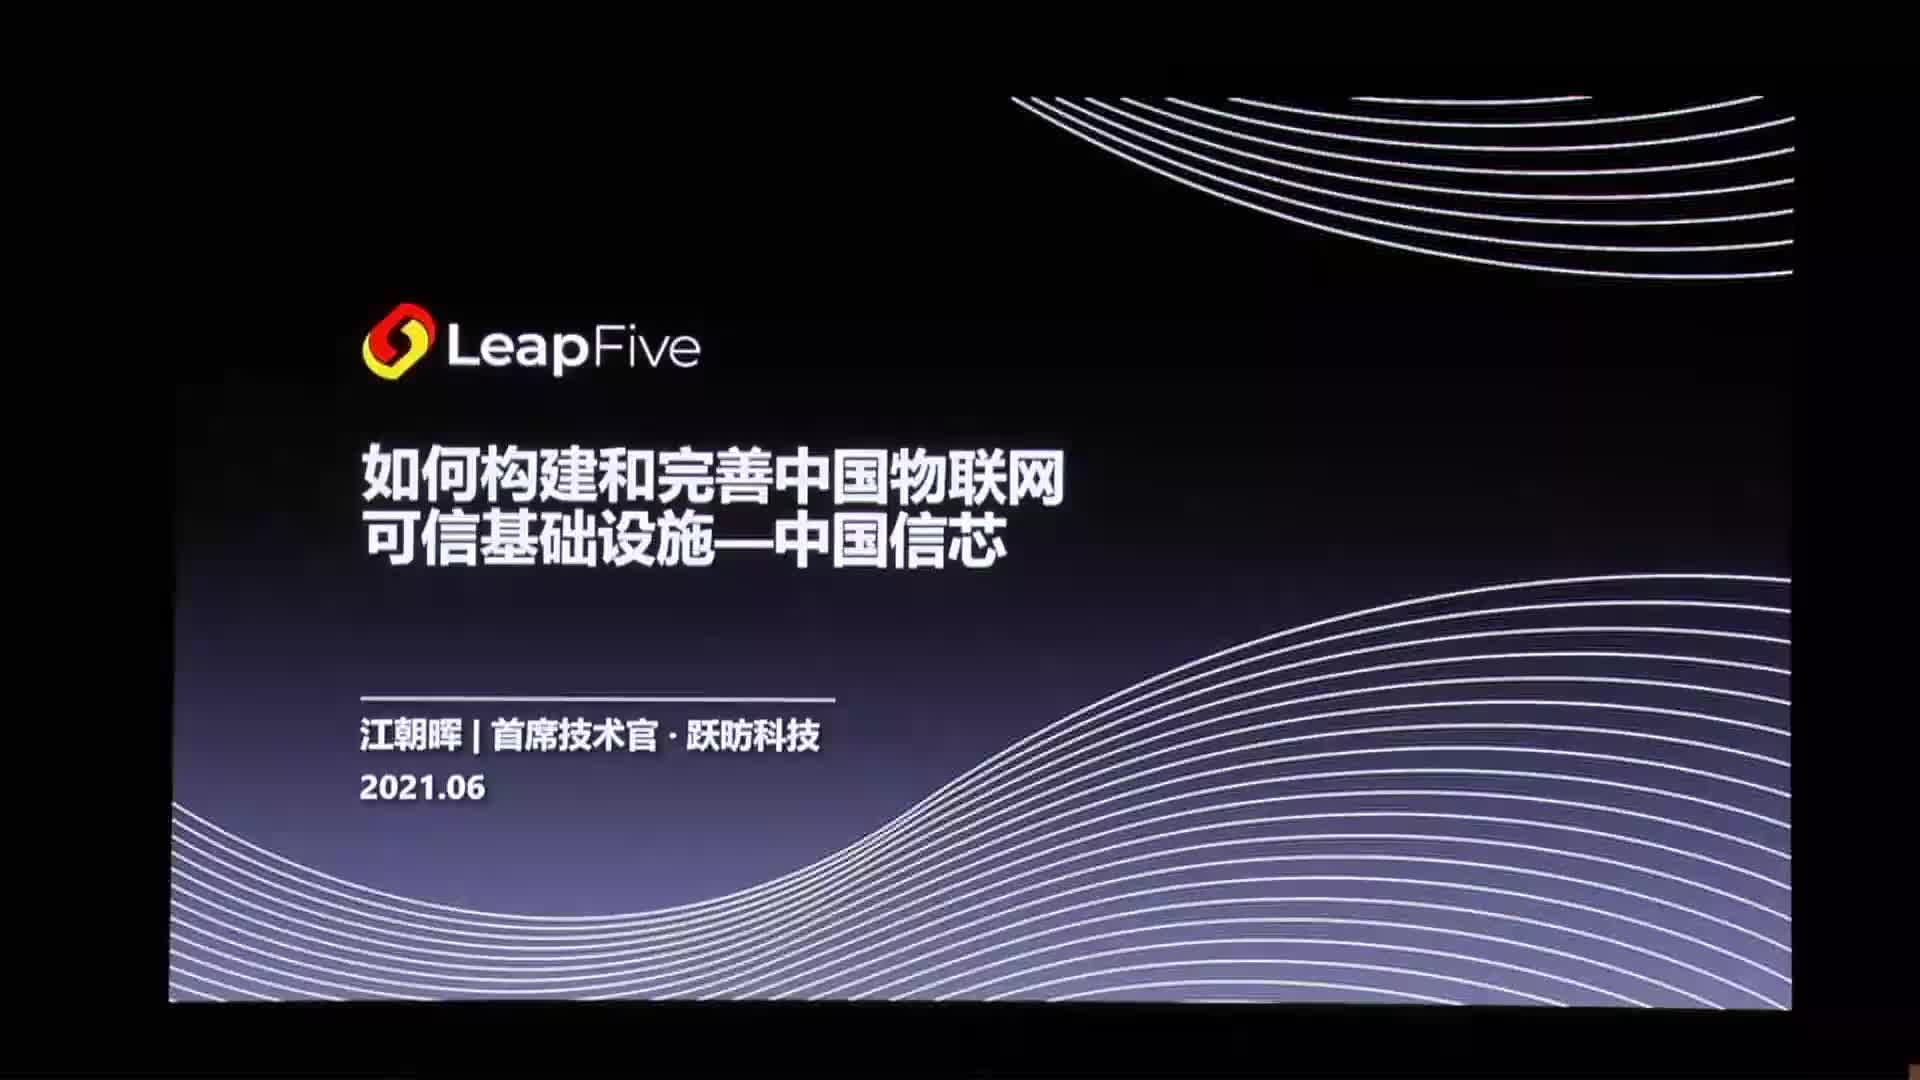 如何构建和完善中国物联网可信基础设施-中国信芯 - 王朝晖@LeapFive -第一届 RISC-V 中国峰1